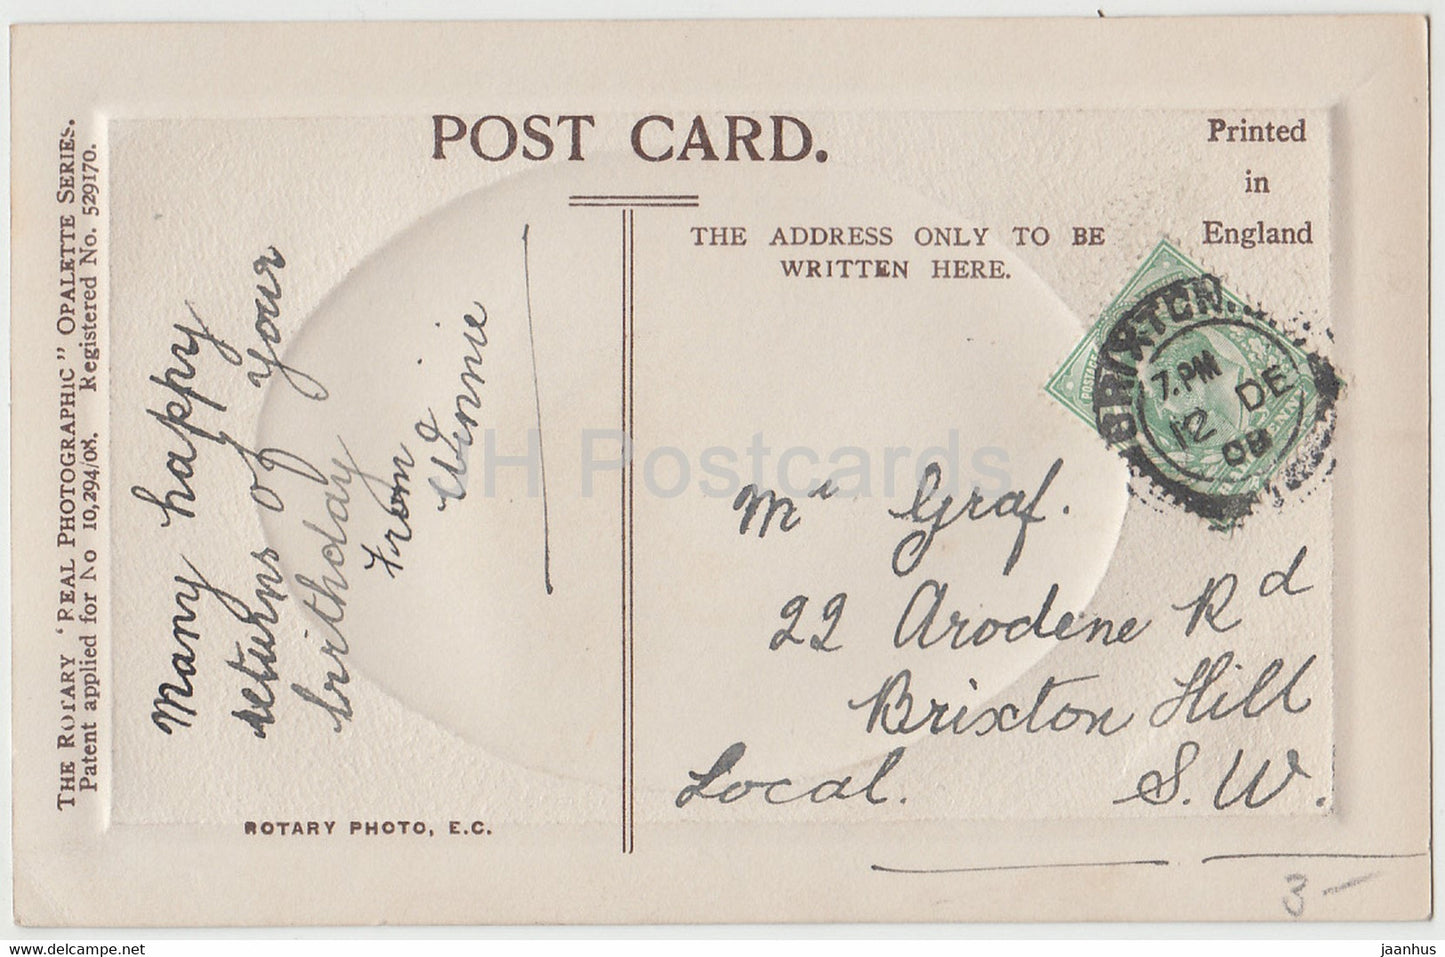 Geburtstagsgrüße – Die Gnade des Himmels wird niedergeschüttet – Mädchen – alte Postkarte von Opalette – 1908 – Vereinigtes Königreich – gebraucht